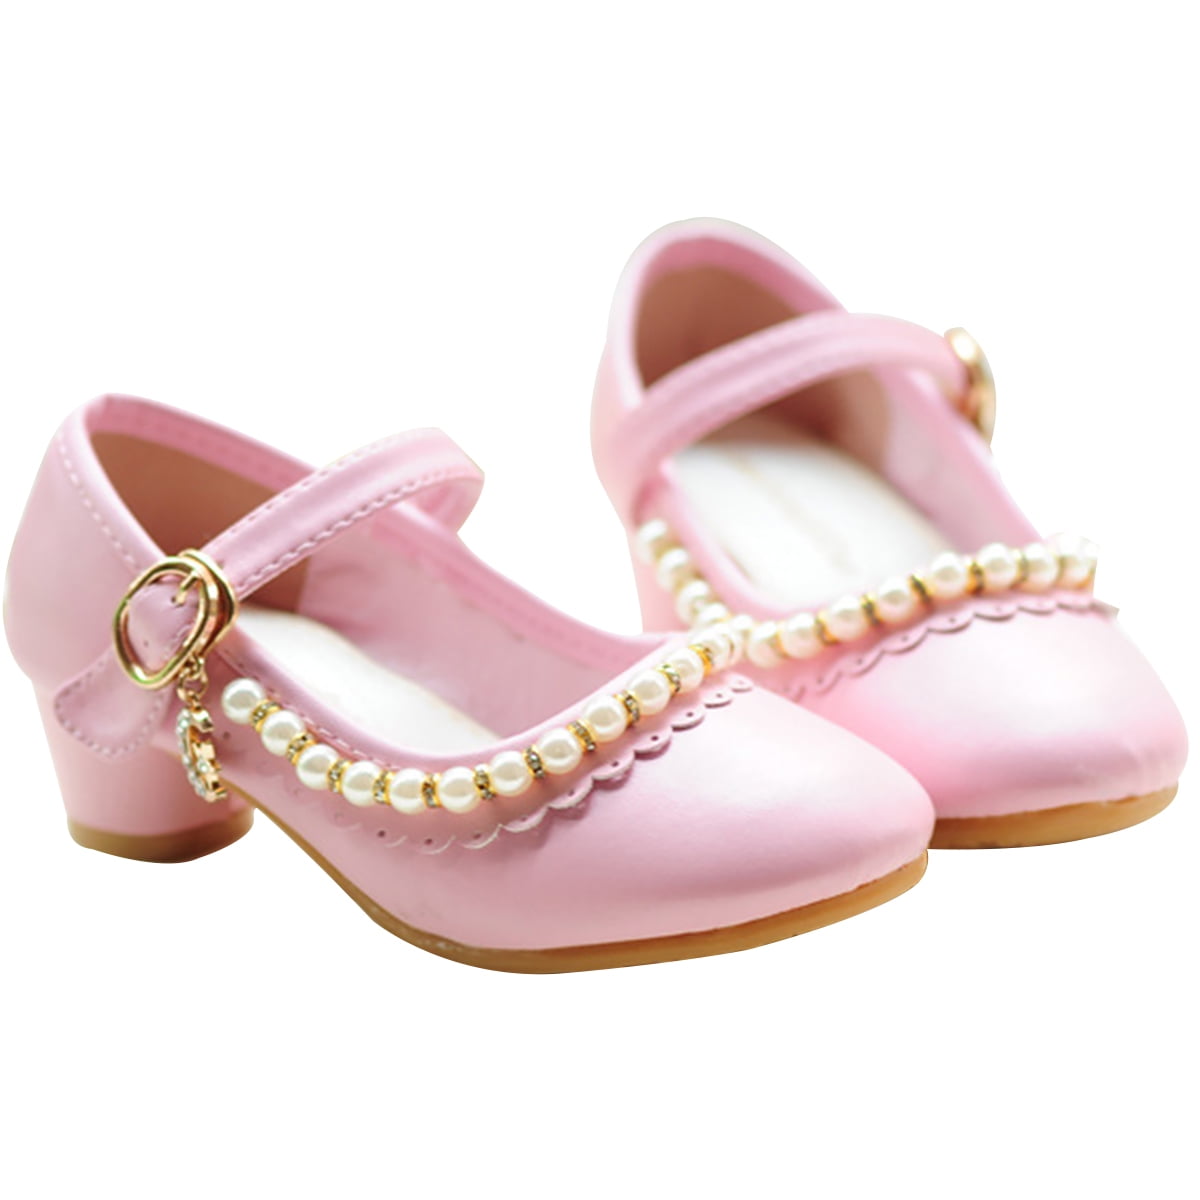 Kids Girls Glitter Cute Pearl Bowknot Princess High Heel Flower Sandals Shoes sz 